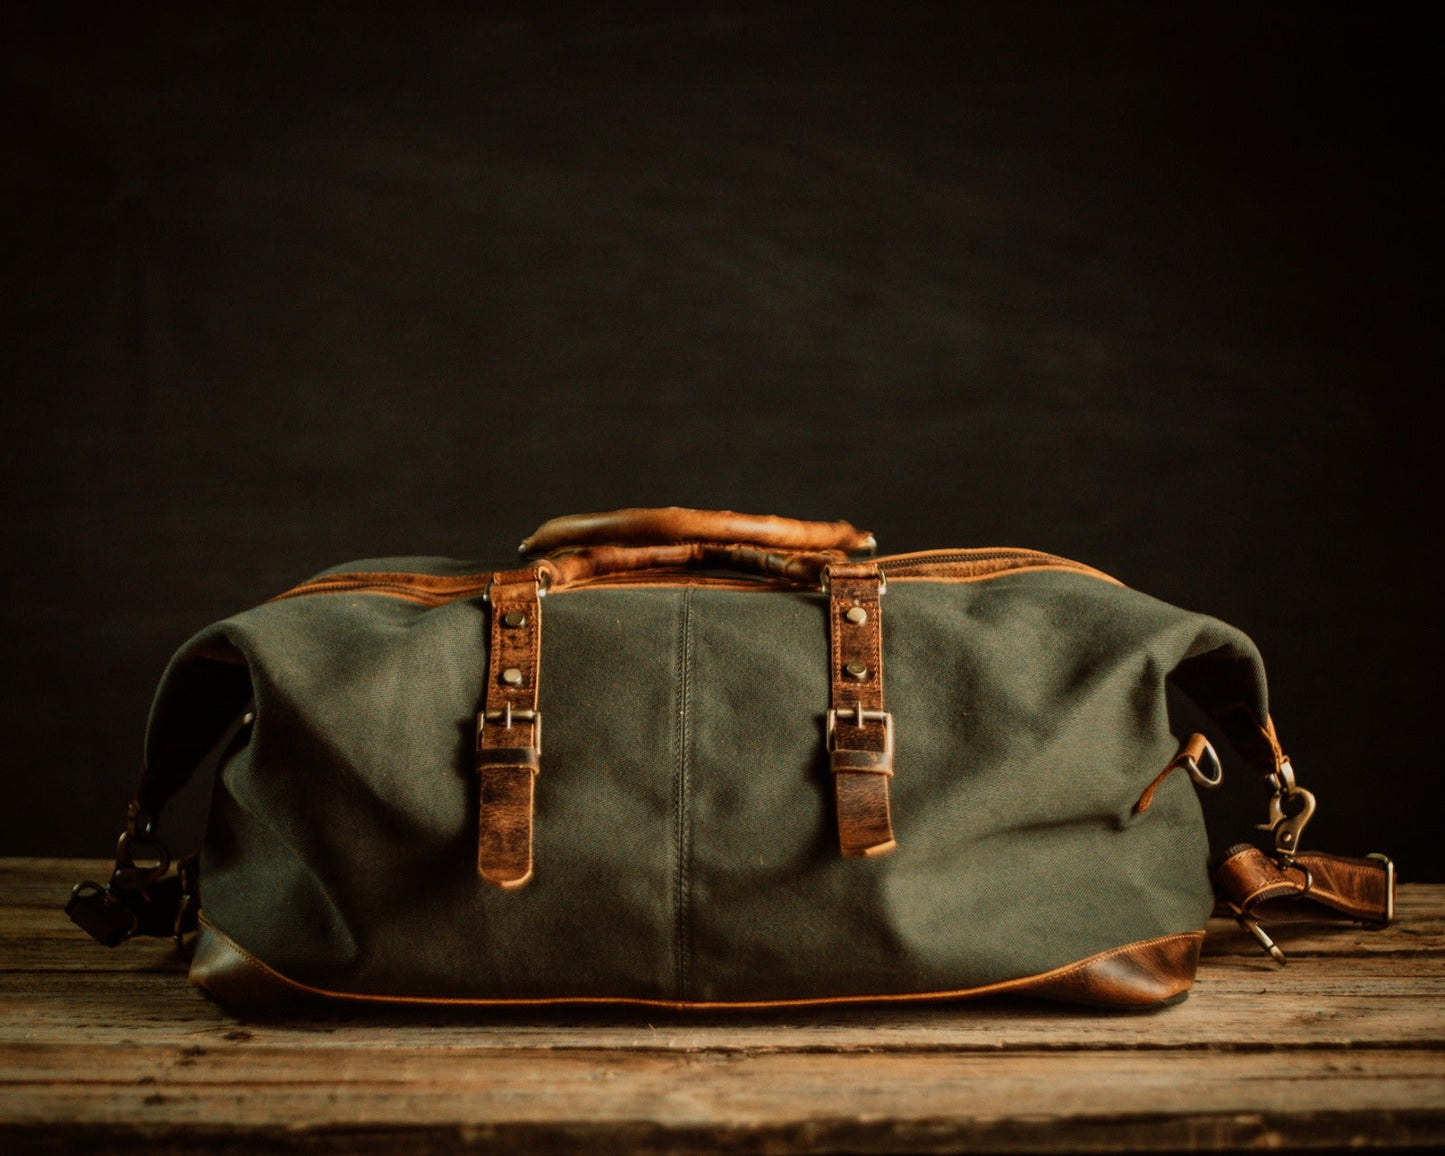 The “Weekender” Duffle Bag